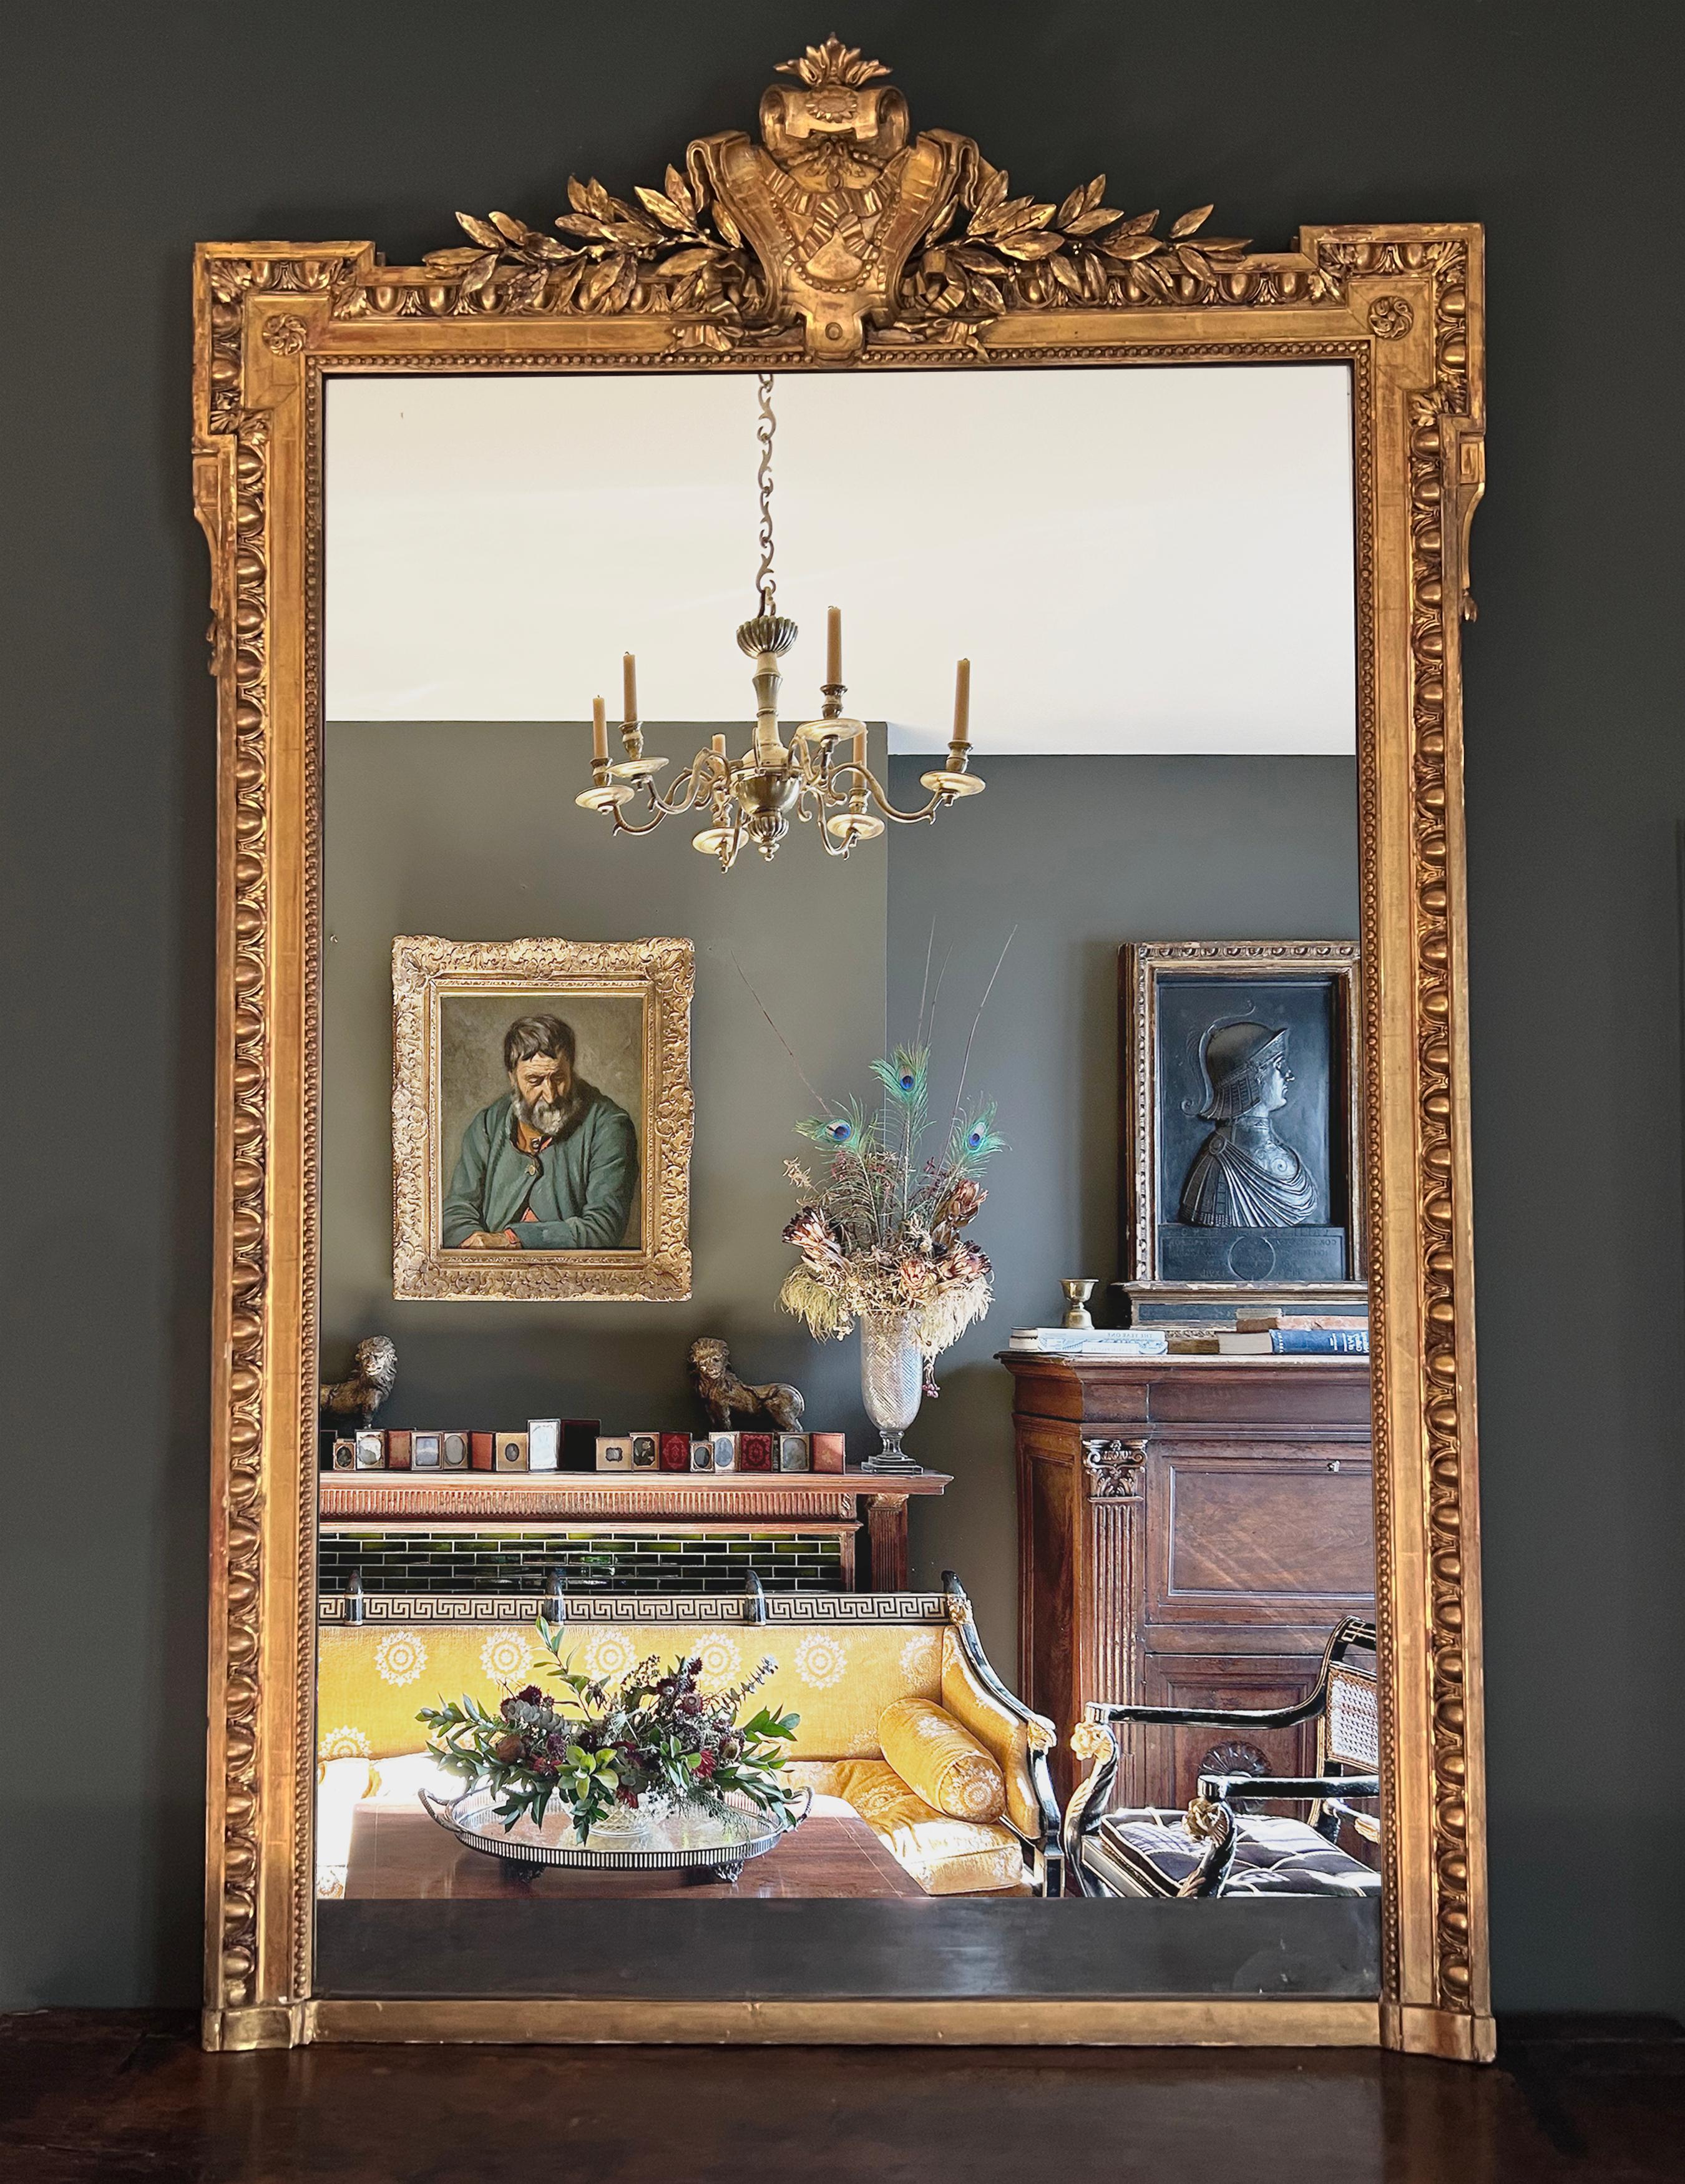 Ein prächtiger und monumentaler neoklassizistischer Pfeilerspiegel aus der Zeit Napoleons III.  Die originale Mercury-Glasplatte wird von einer eleganten Ei- und Abnäherleiste umrahmt, während die Oberseite des Spiegels von griechischen Architraven